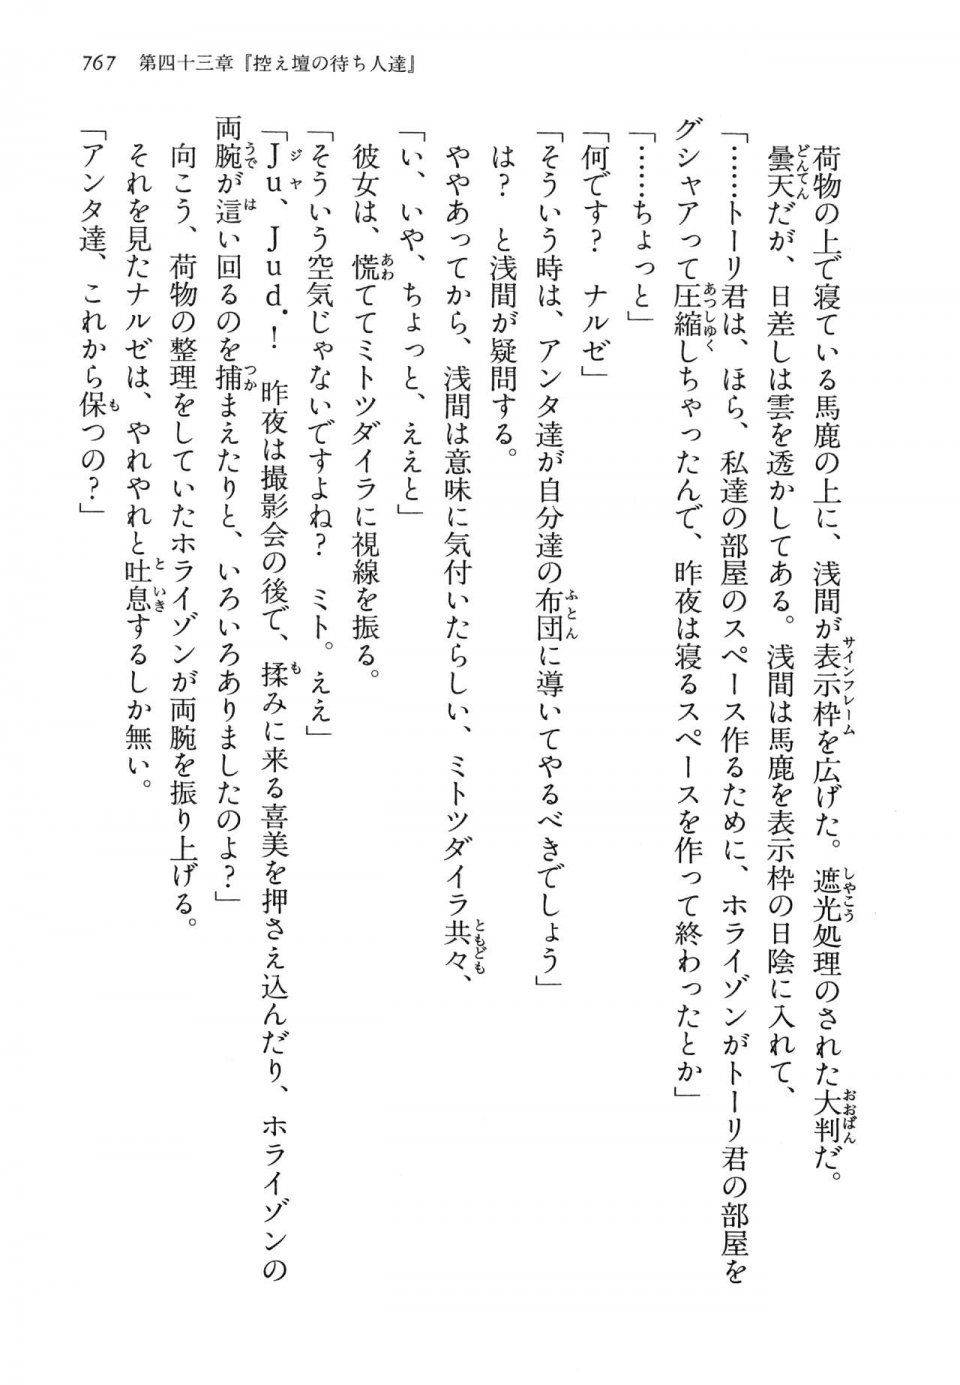 Kyoukai Senjou no Horizon LN Vol 14(6B) - Photo #767